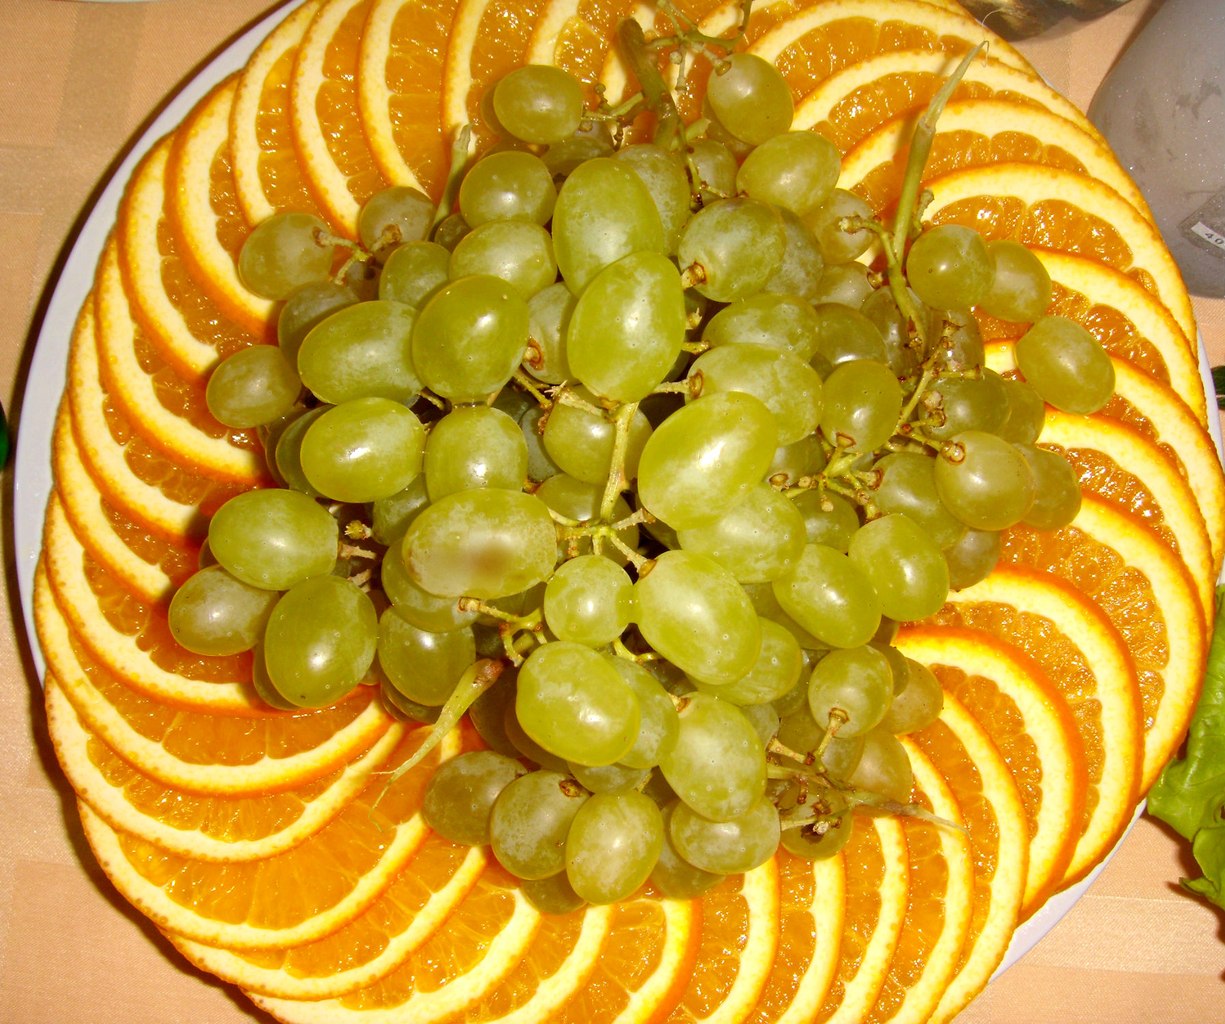 Фруктовая тарелка с виноградом